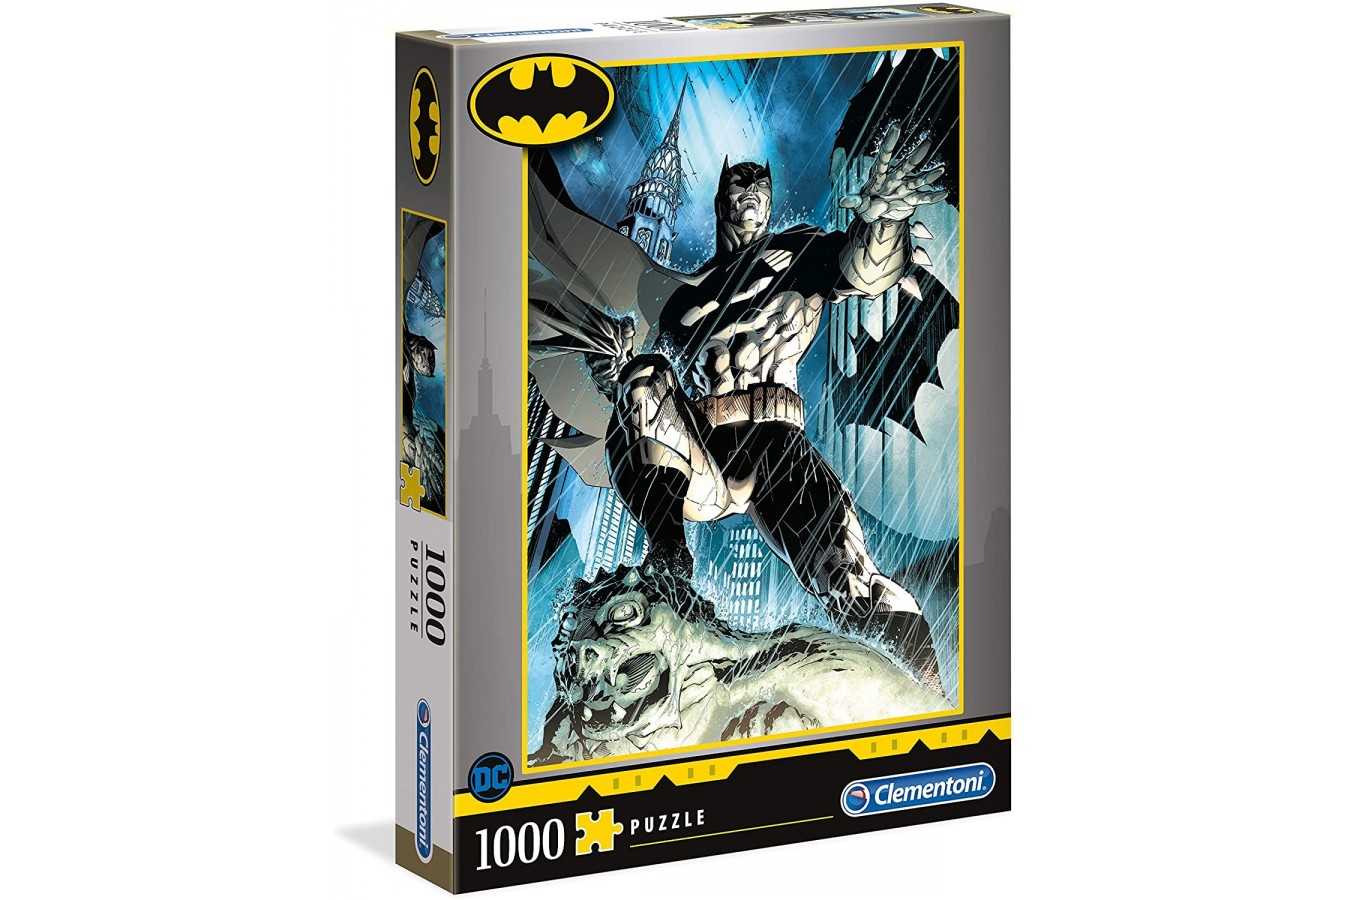 Puzzle 1000 piese Clementoni - Batman (Clementoni-39576)